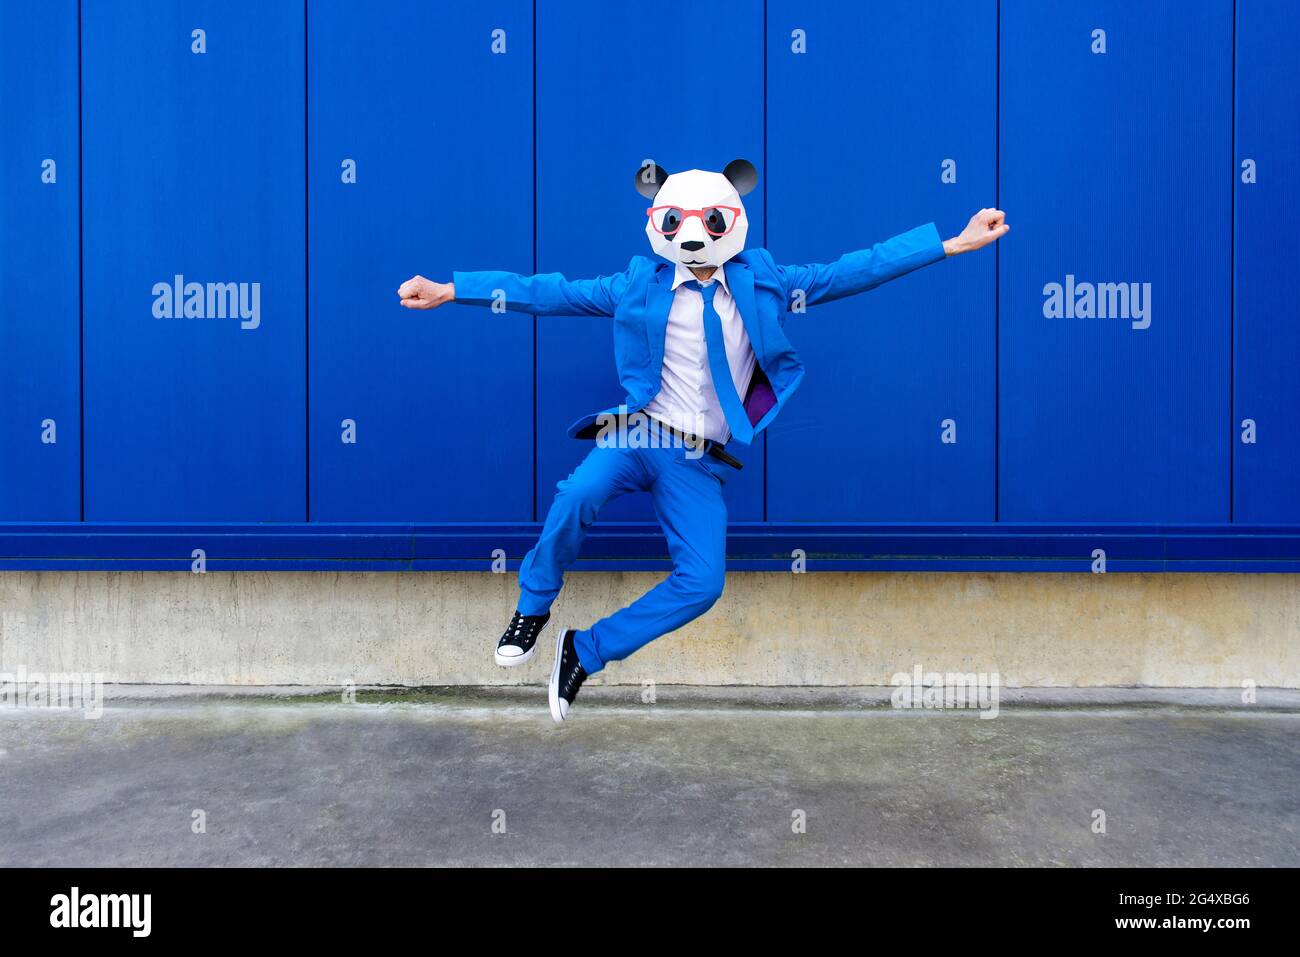 Homme portant un costume bleu vif et un masque de panda sautant contre le mur bleu Banque D'Images